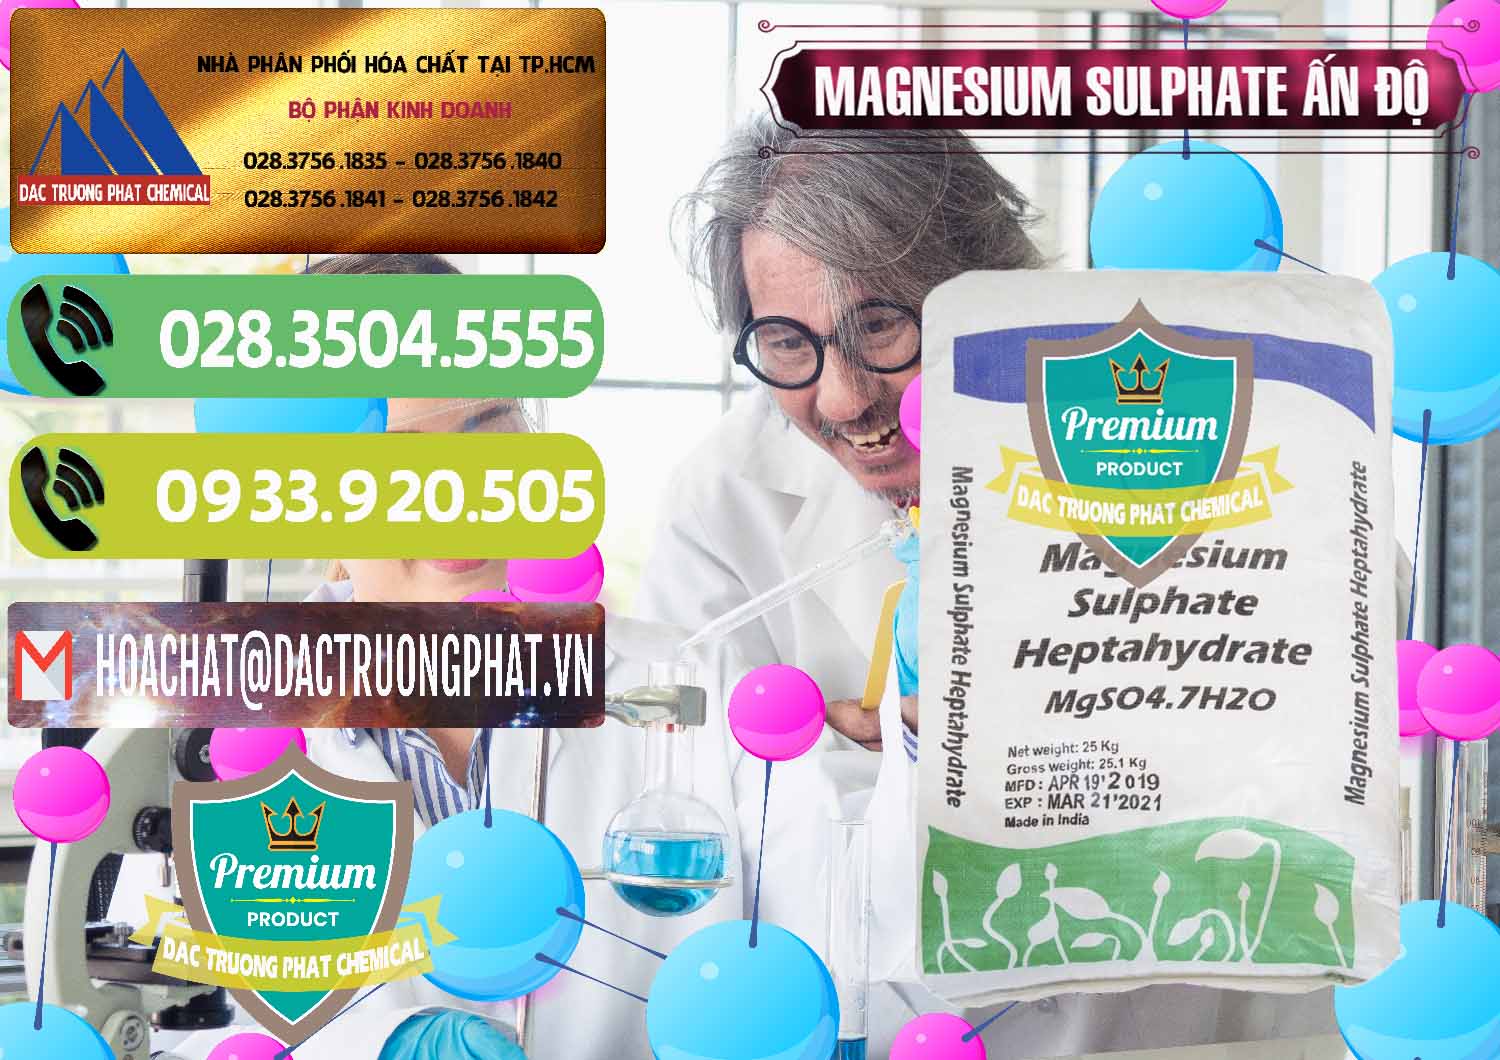 Nơi chuyên phân phối & bán MGSO4.7H2O – Magnesium Sulphate Heptahydrate Ấn Độ India - 0362 - Chuyên nhập khẩu ( cung cấp ) hóa chất tại TP.HCM - hoachatmientay.vn